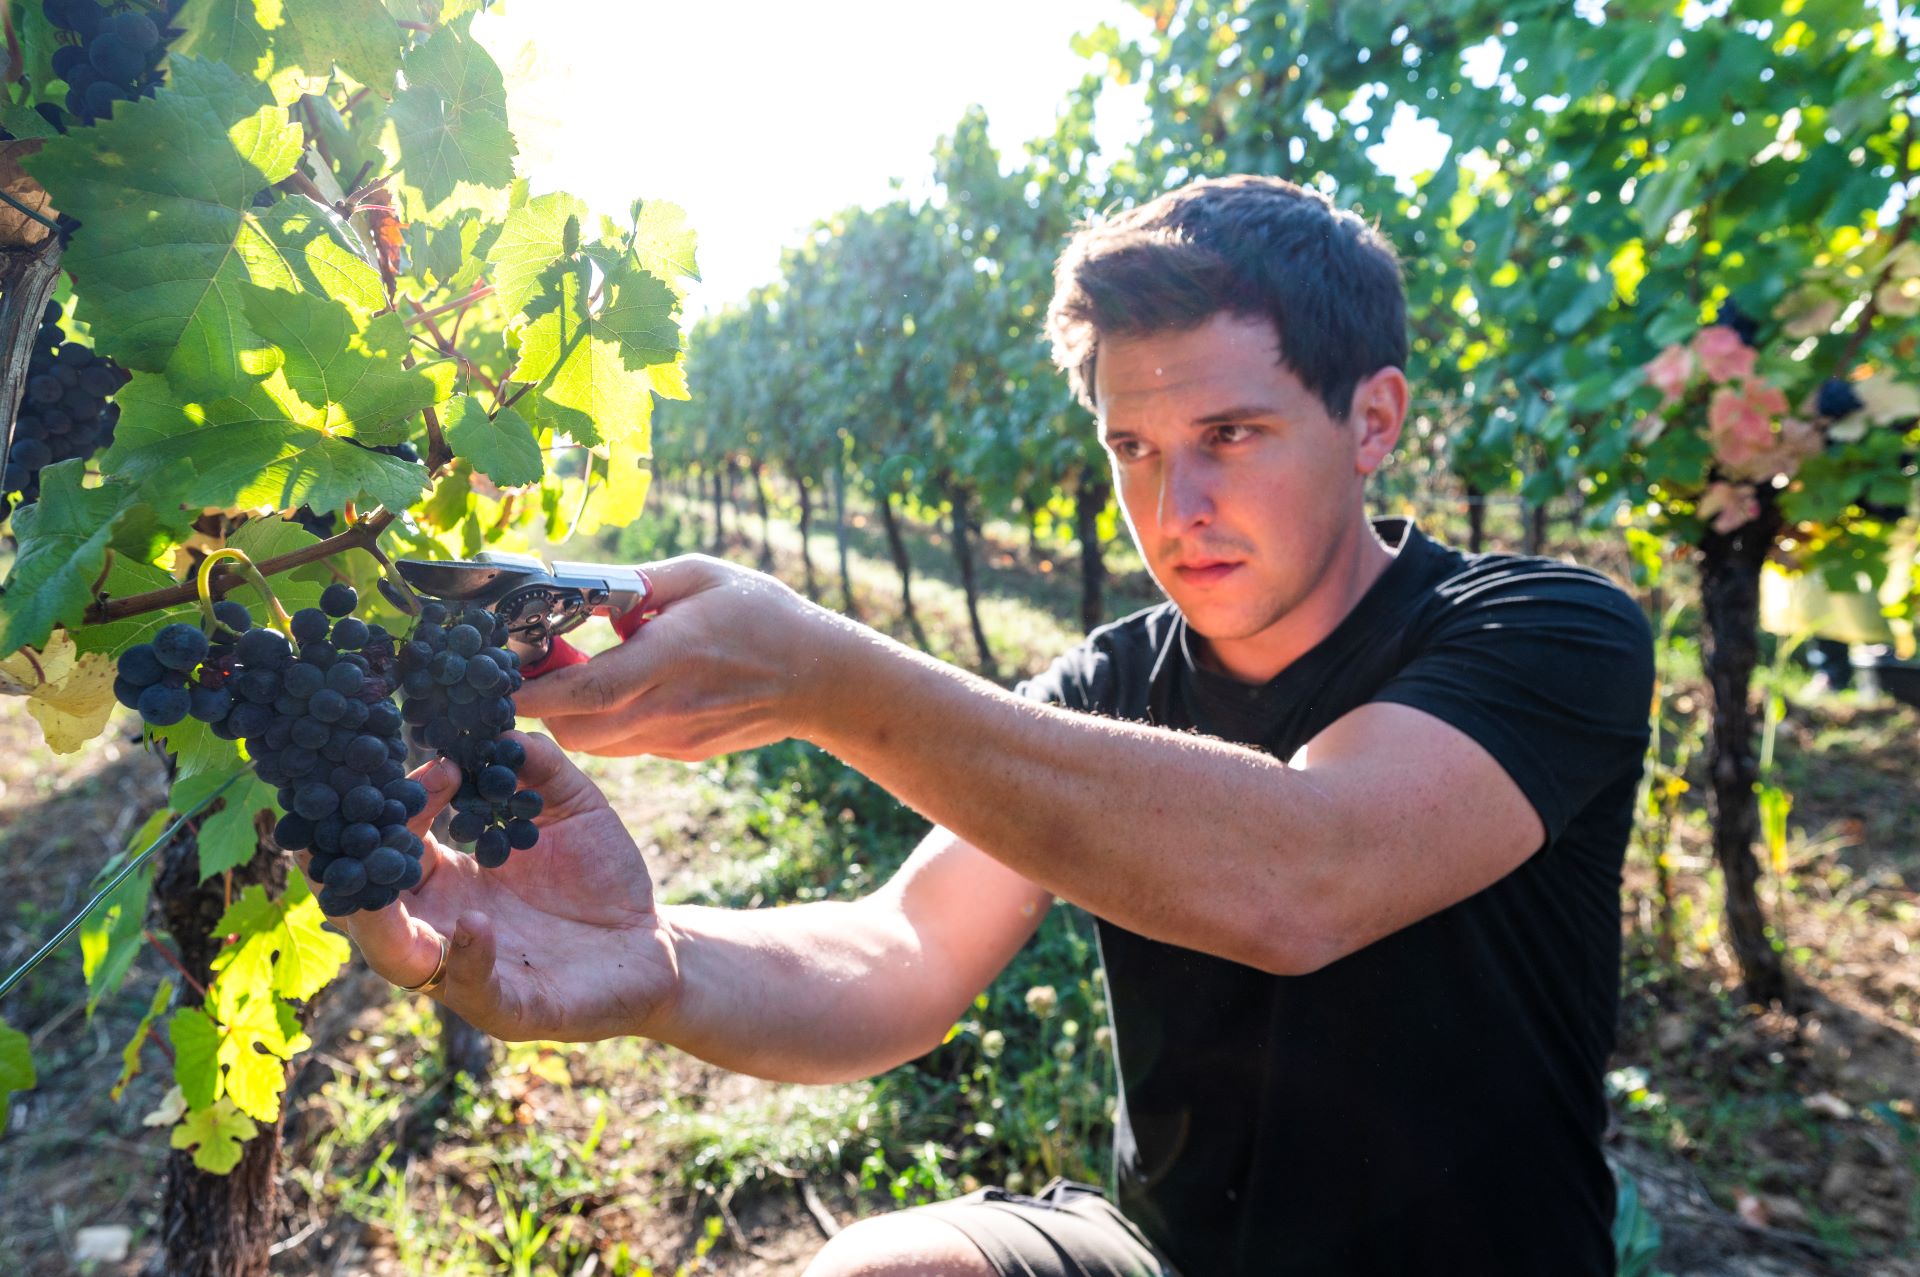 Le jeune viticulteur est photographié dans le vignoble, inspectant les raisins violet foncé sur les vignes.